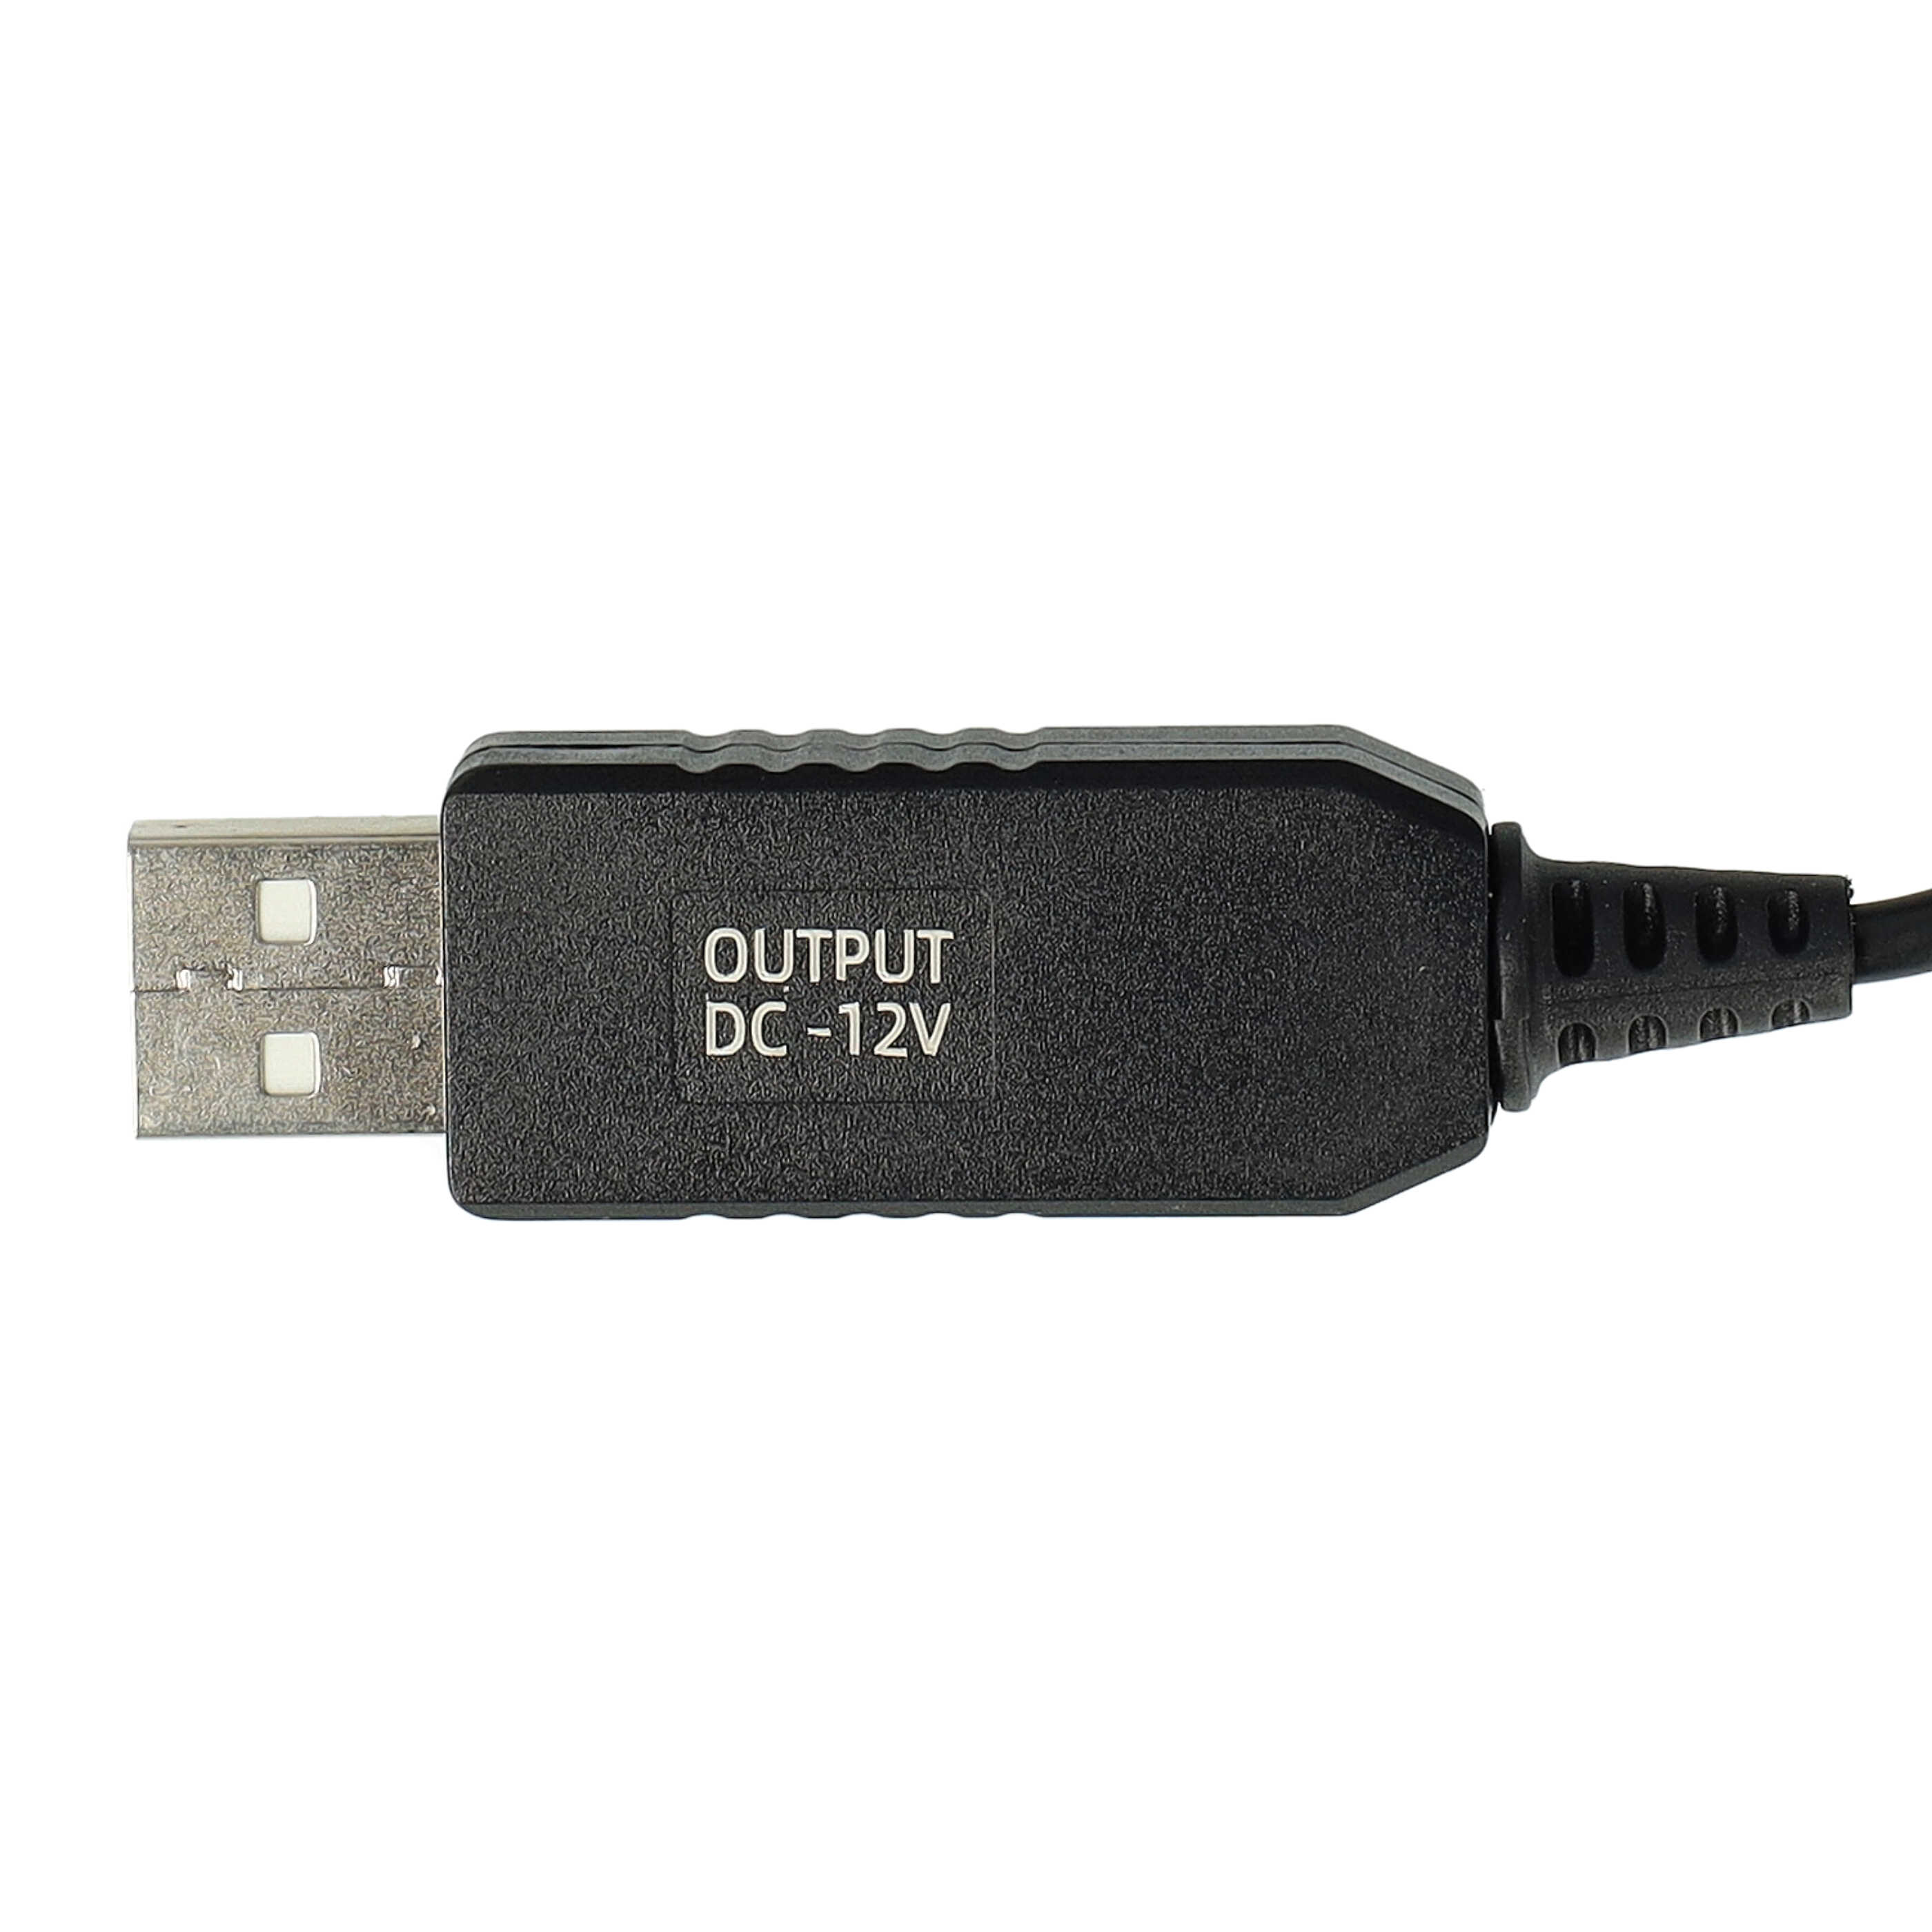 Cable de carga USB para afeitadoras, depiladoras, cepillo de dientes, etc. Braun, Oral-B HC20 - 120 cm